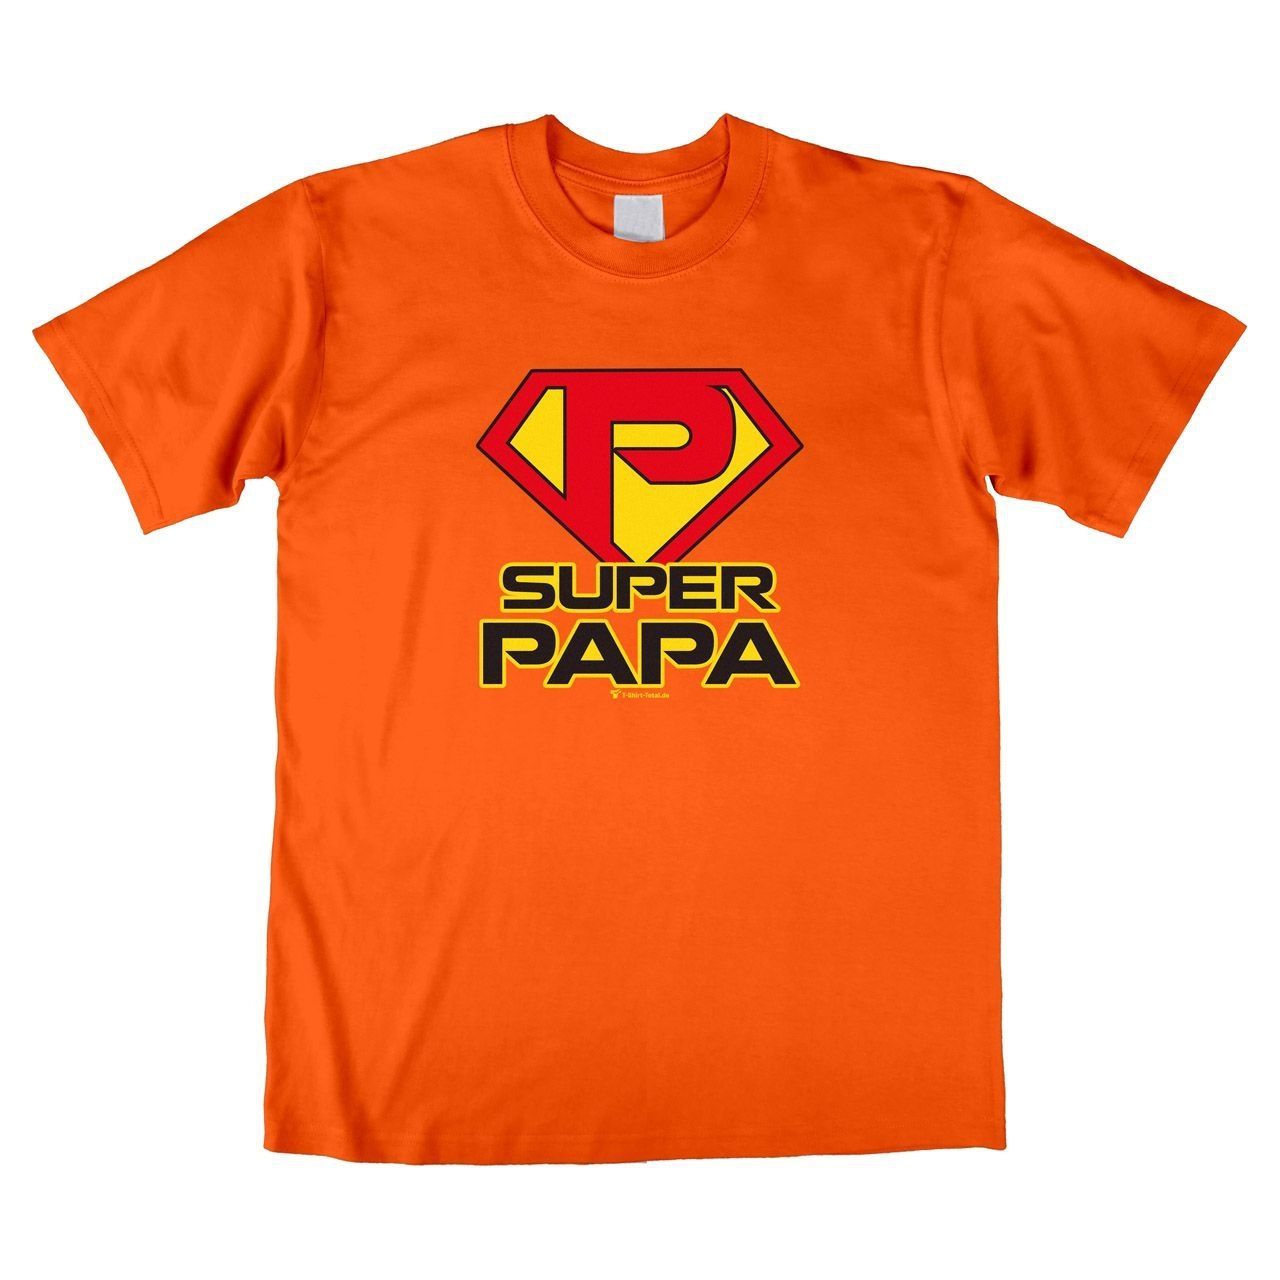 Super Papa Unisex T-Shirt orange Large